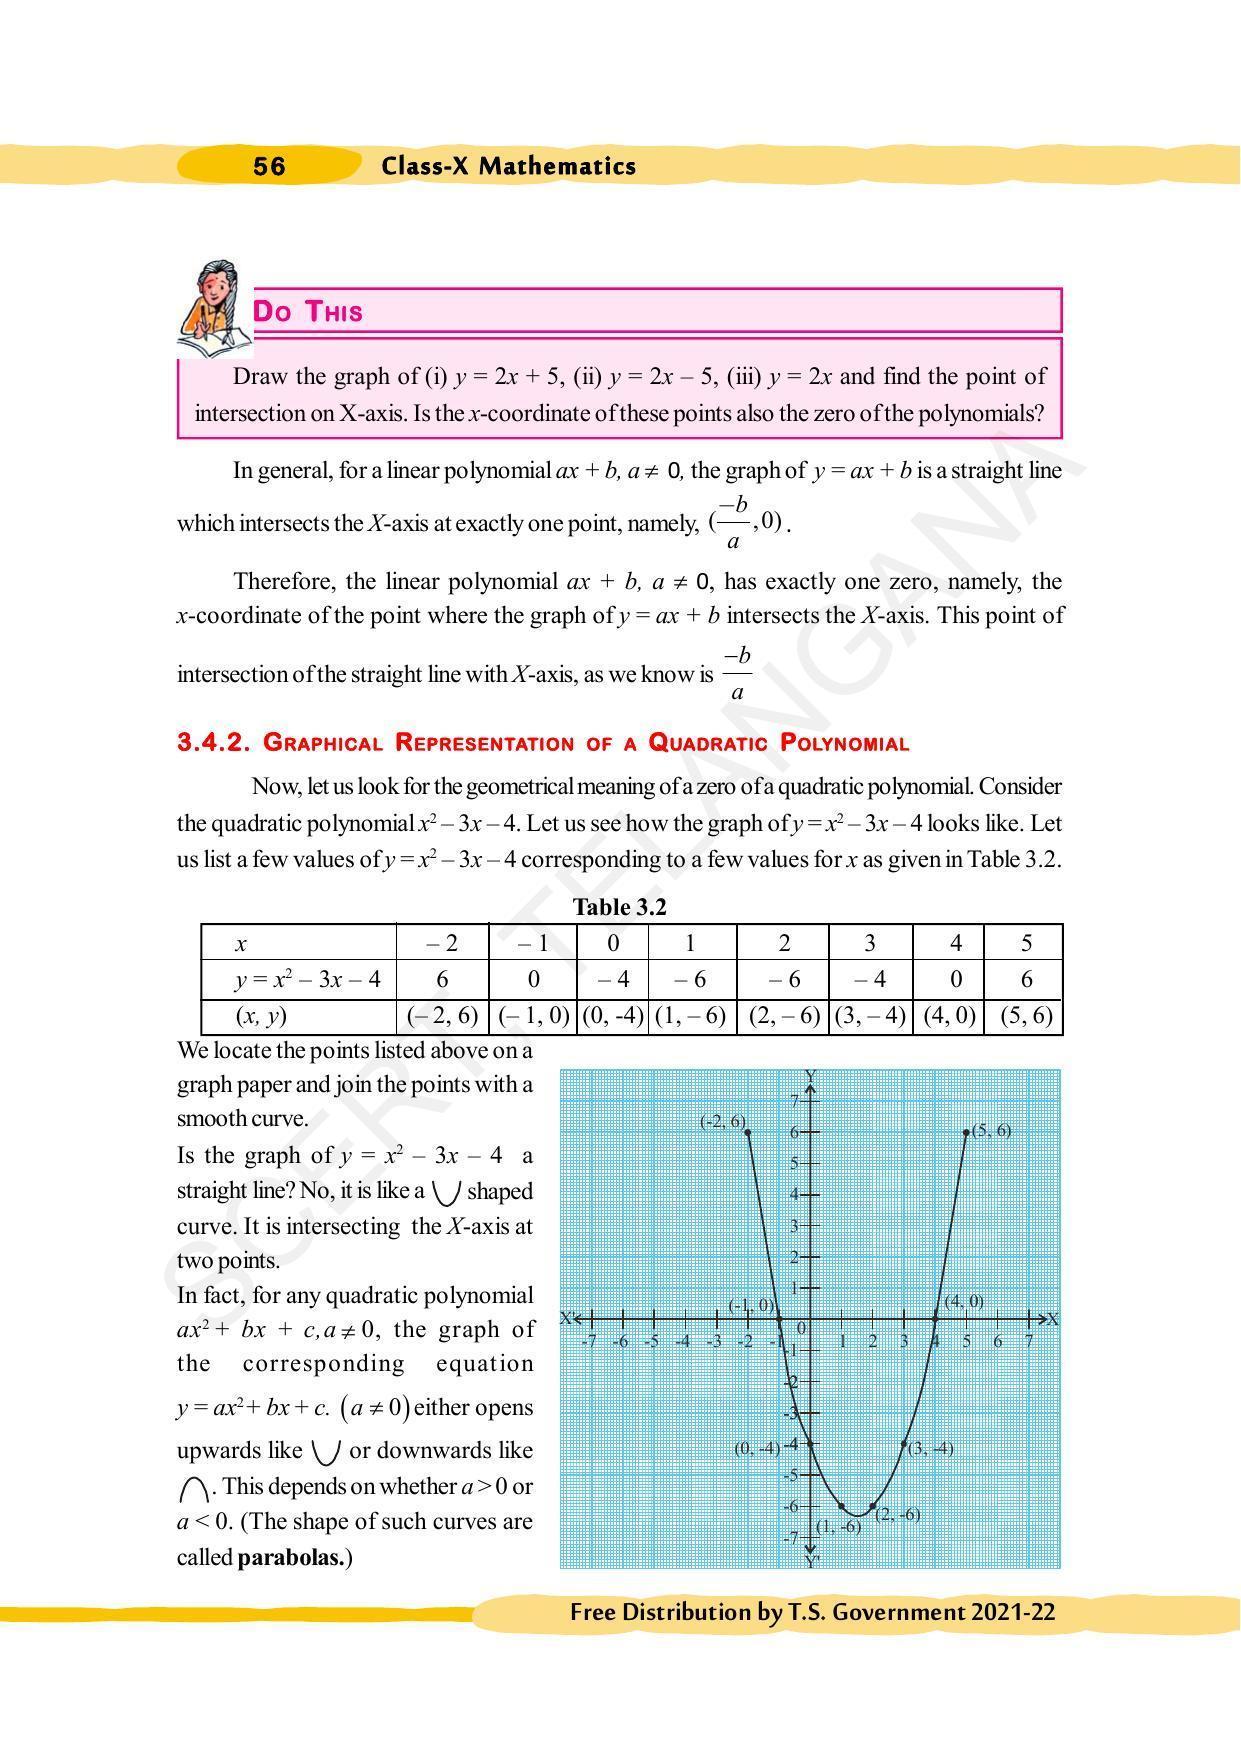 TS SCERT Class 10 Maths (English Medium) Text Book - Page 66